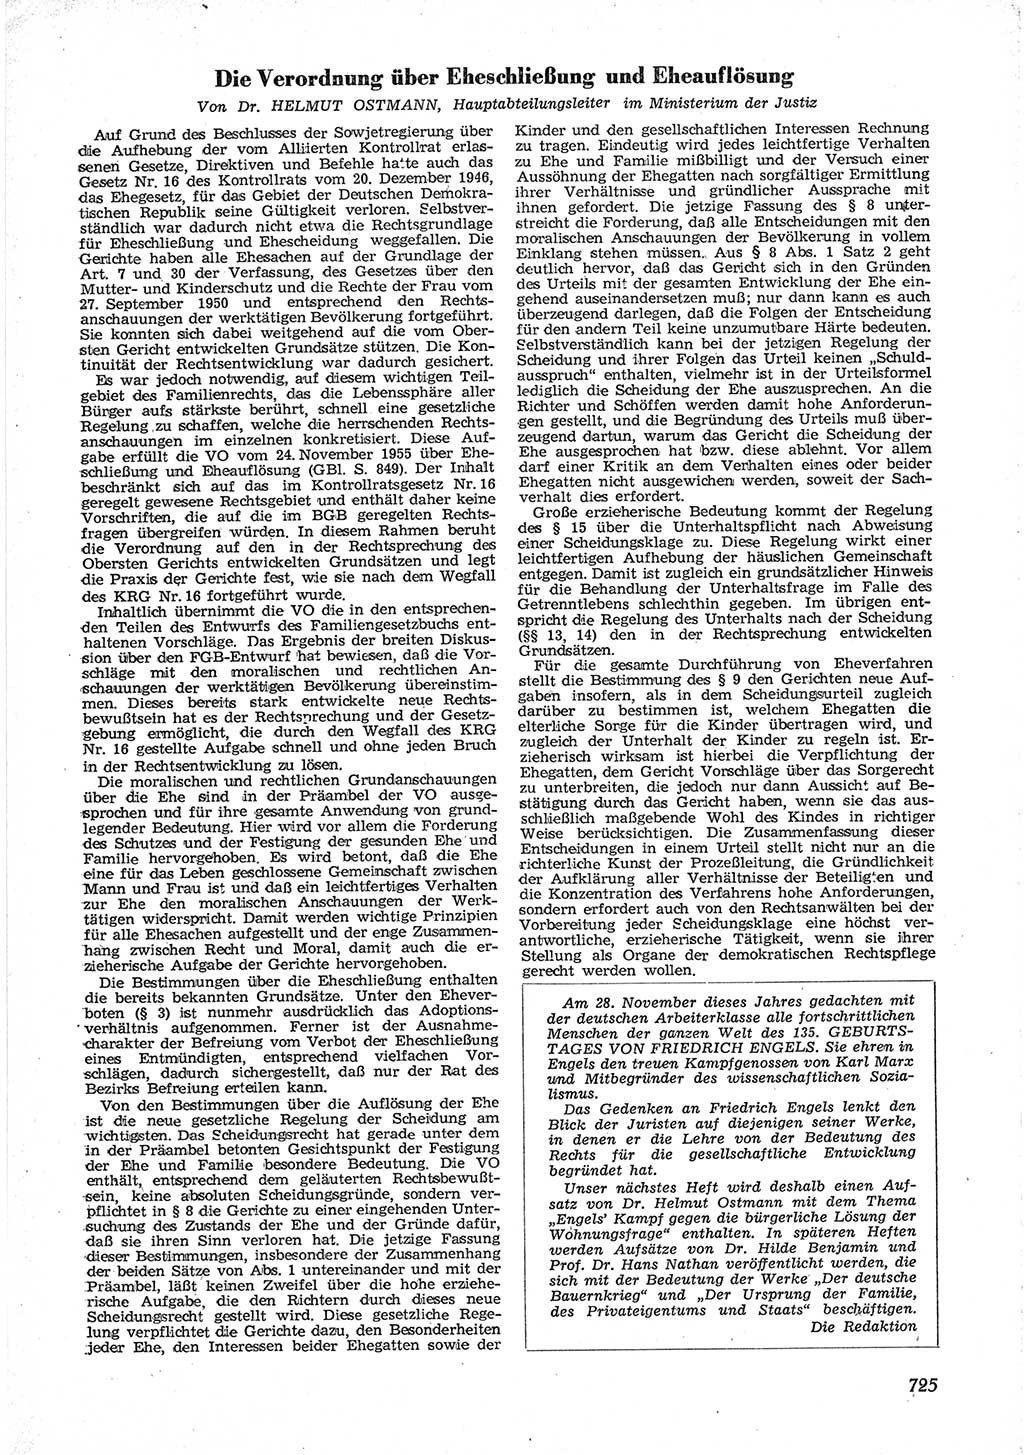 Neue Justiz (NJ), Zeitschrift für Recht und Rechtswissenschaft [Deutsche Demokratische Republik (DDR)], 9. Jahrgang 1955, Seite 725 (NJ DDR 1955, S. 725)